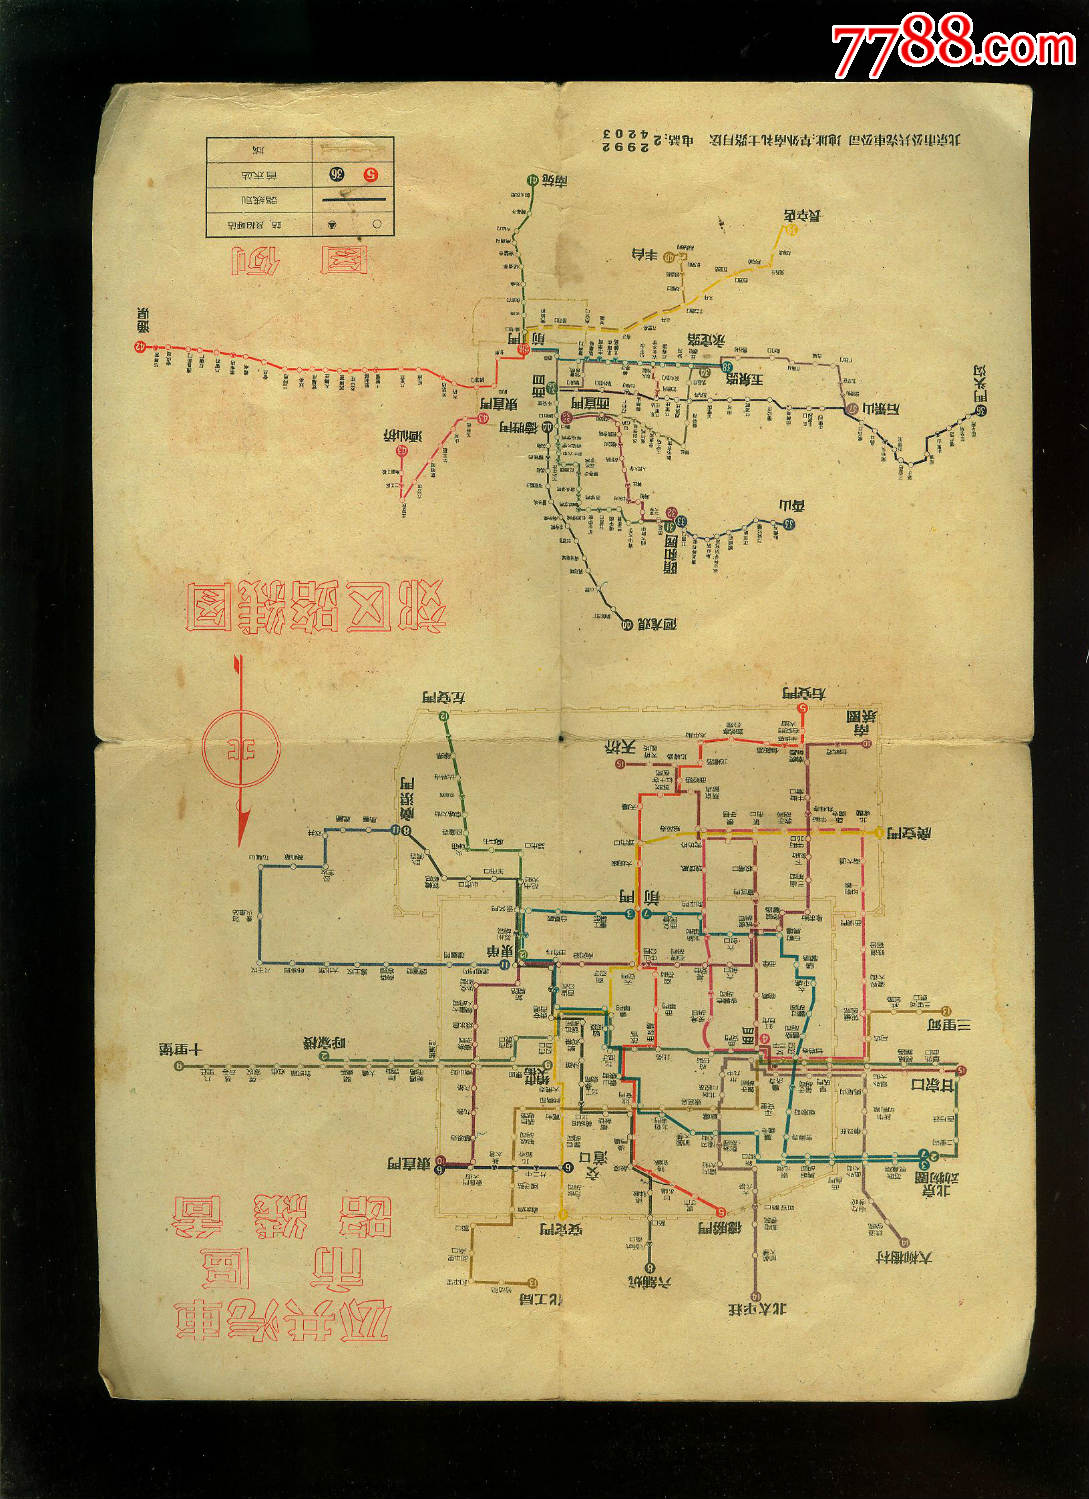 1956年北京市公共汽车电车路线图,展开16开大